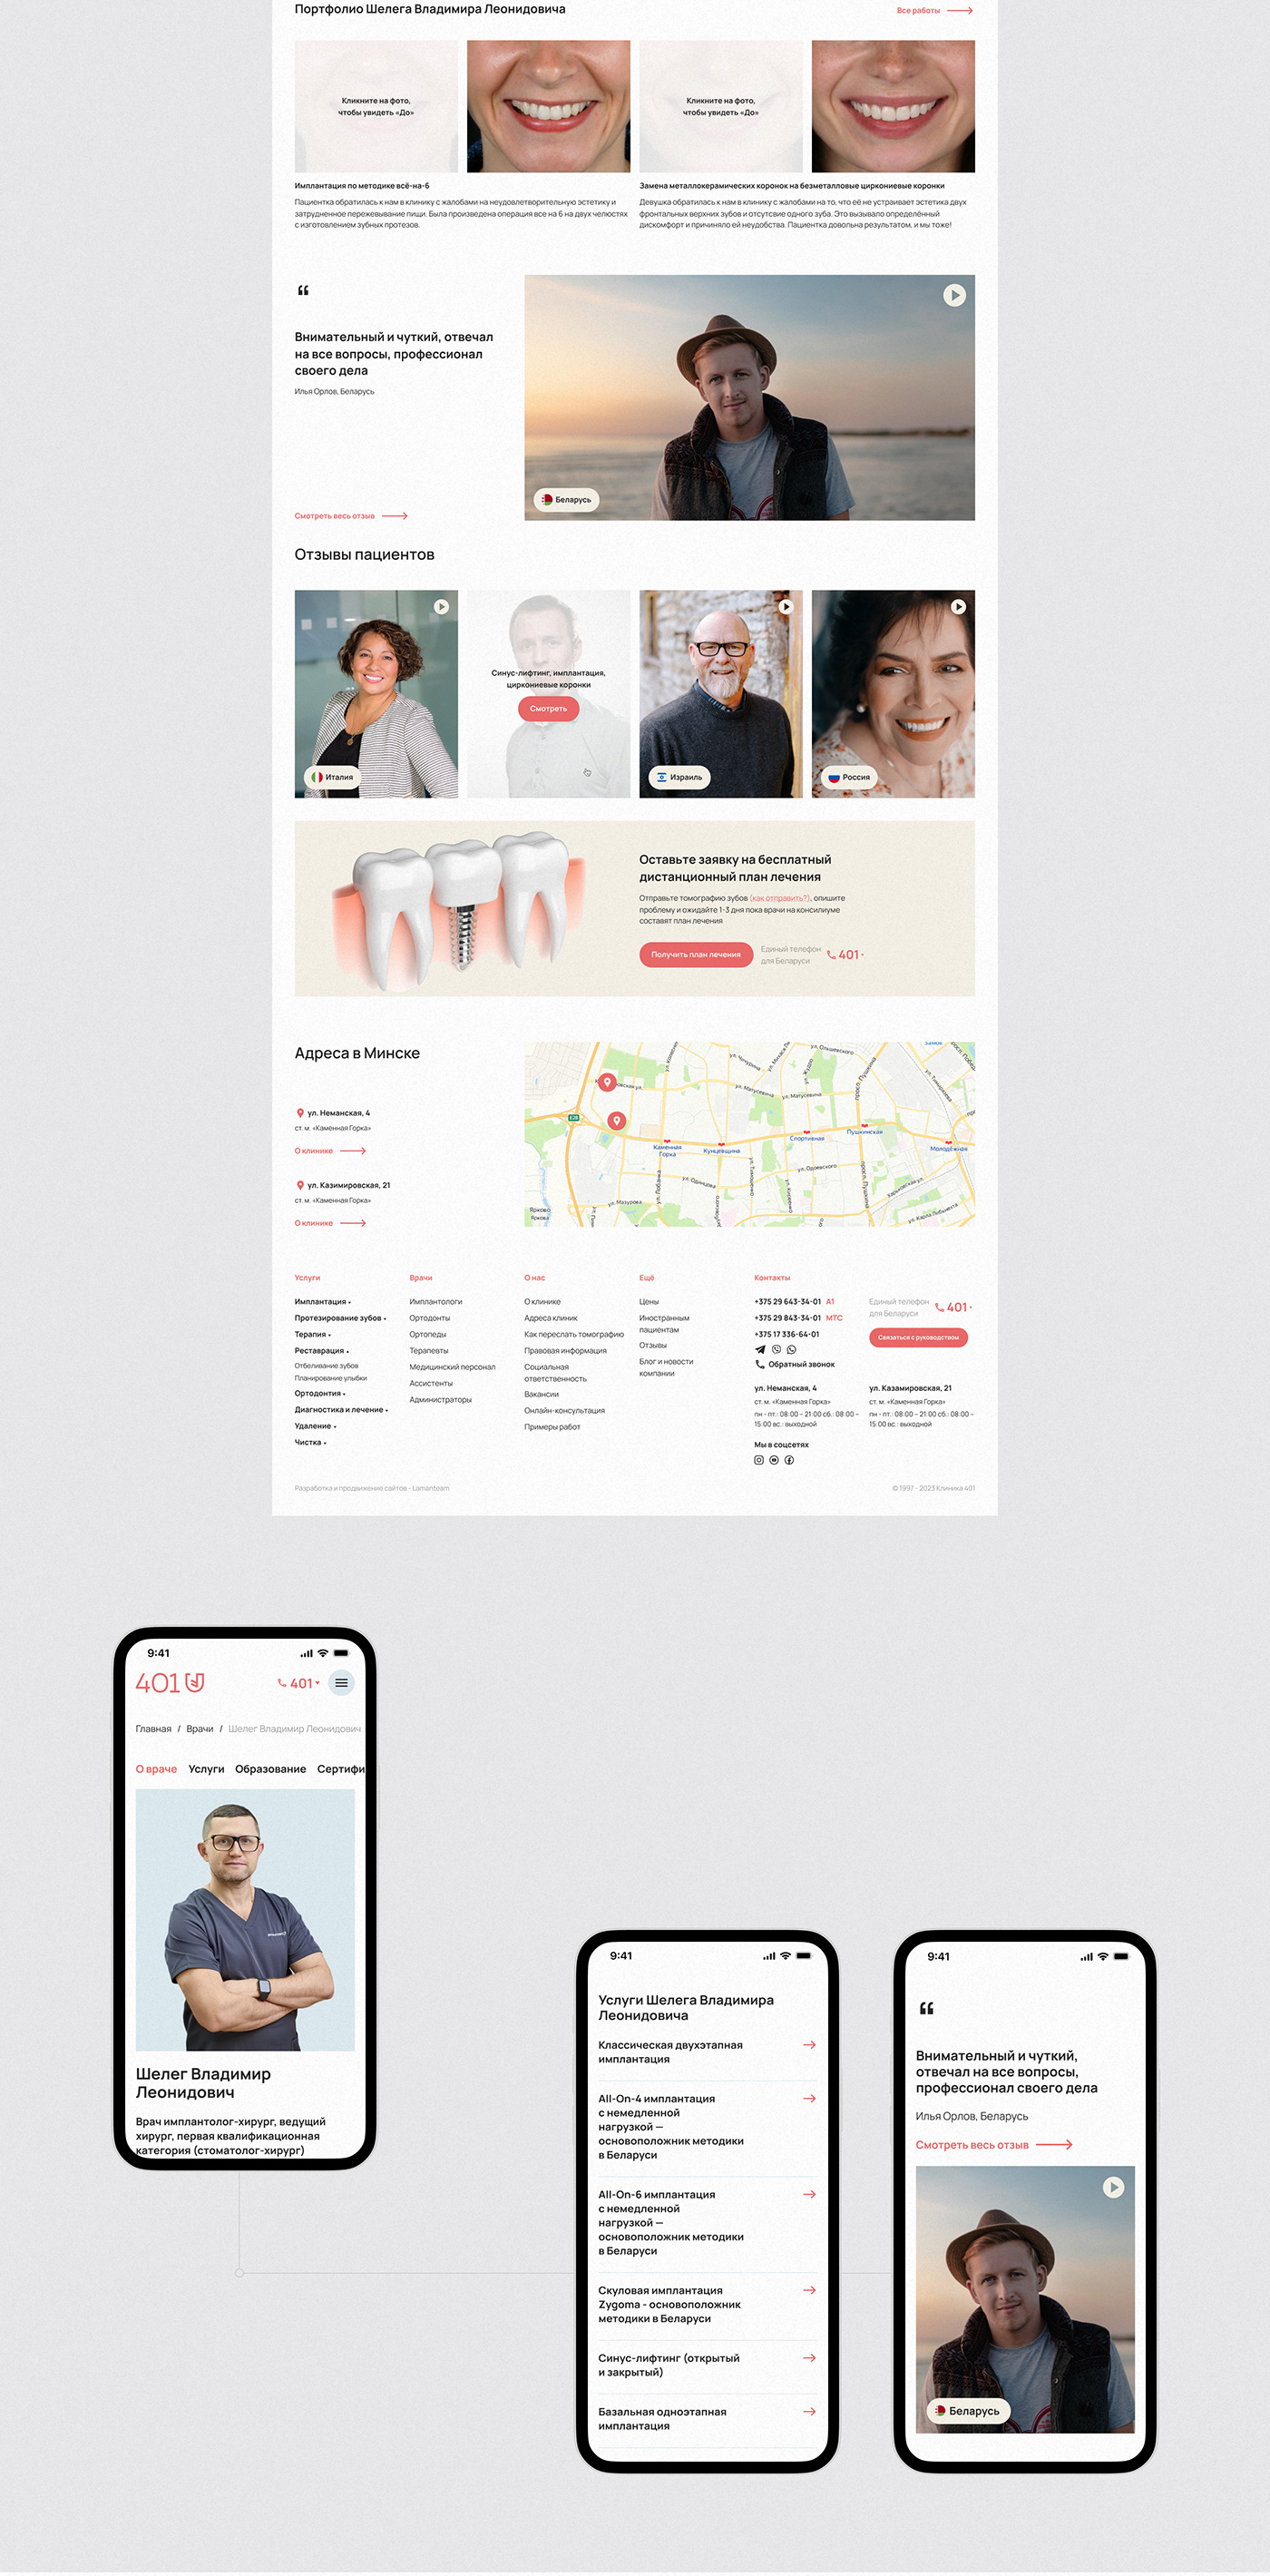 dental dentistry medical Health medicine Web Design  Website design marketing  